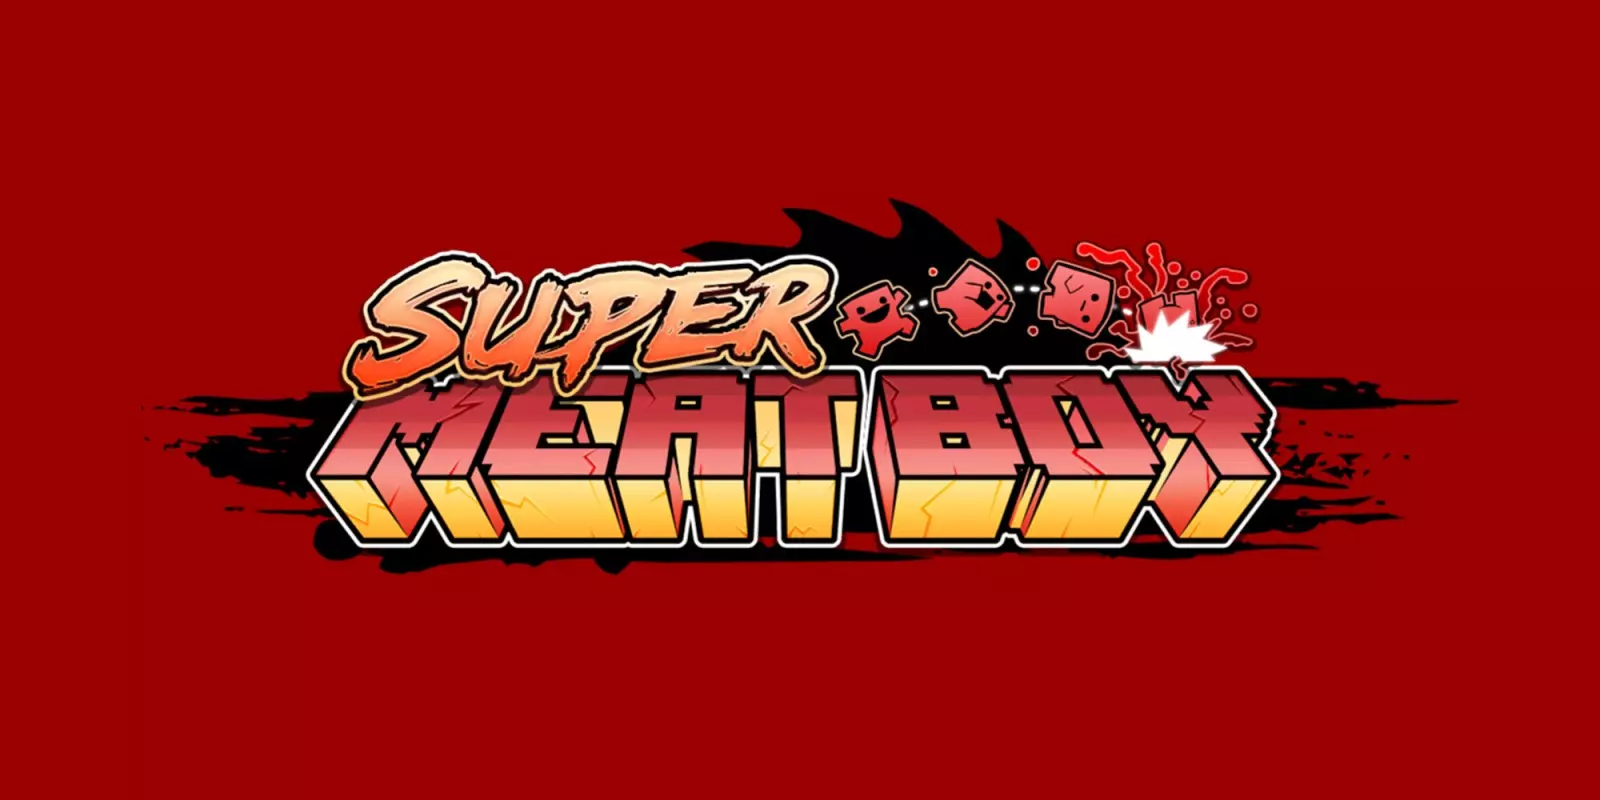 Super Meat Boy - это сложный платформер, в котором вы играете за анимированный кубика мяса, который пытается спасти свою девушку, которая, как оказалось, сделана из бинтов, от злого плода в банке в смокинге.